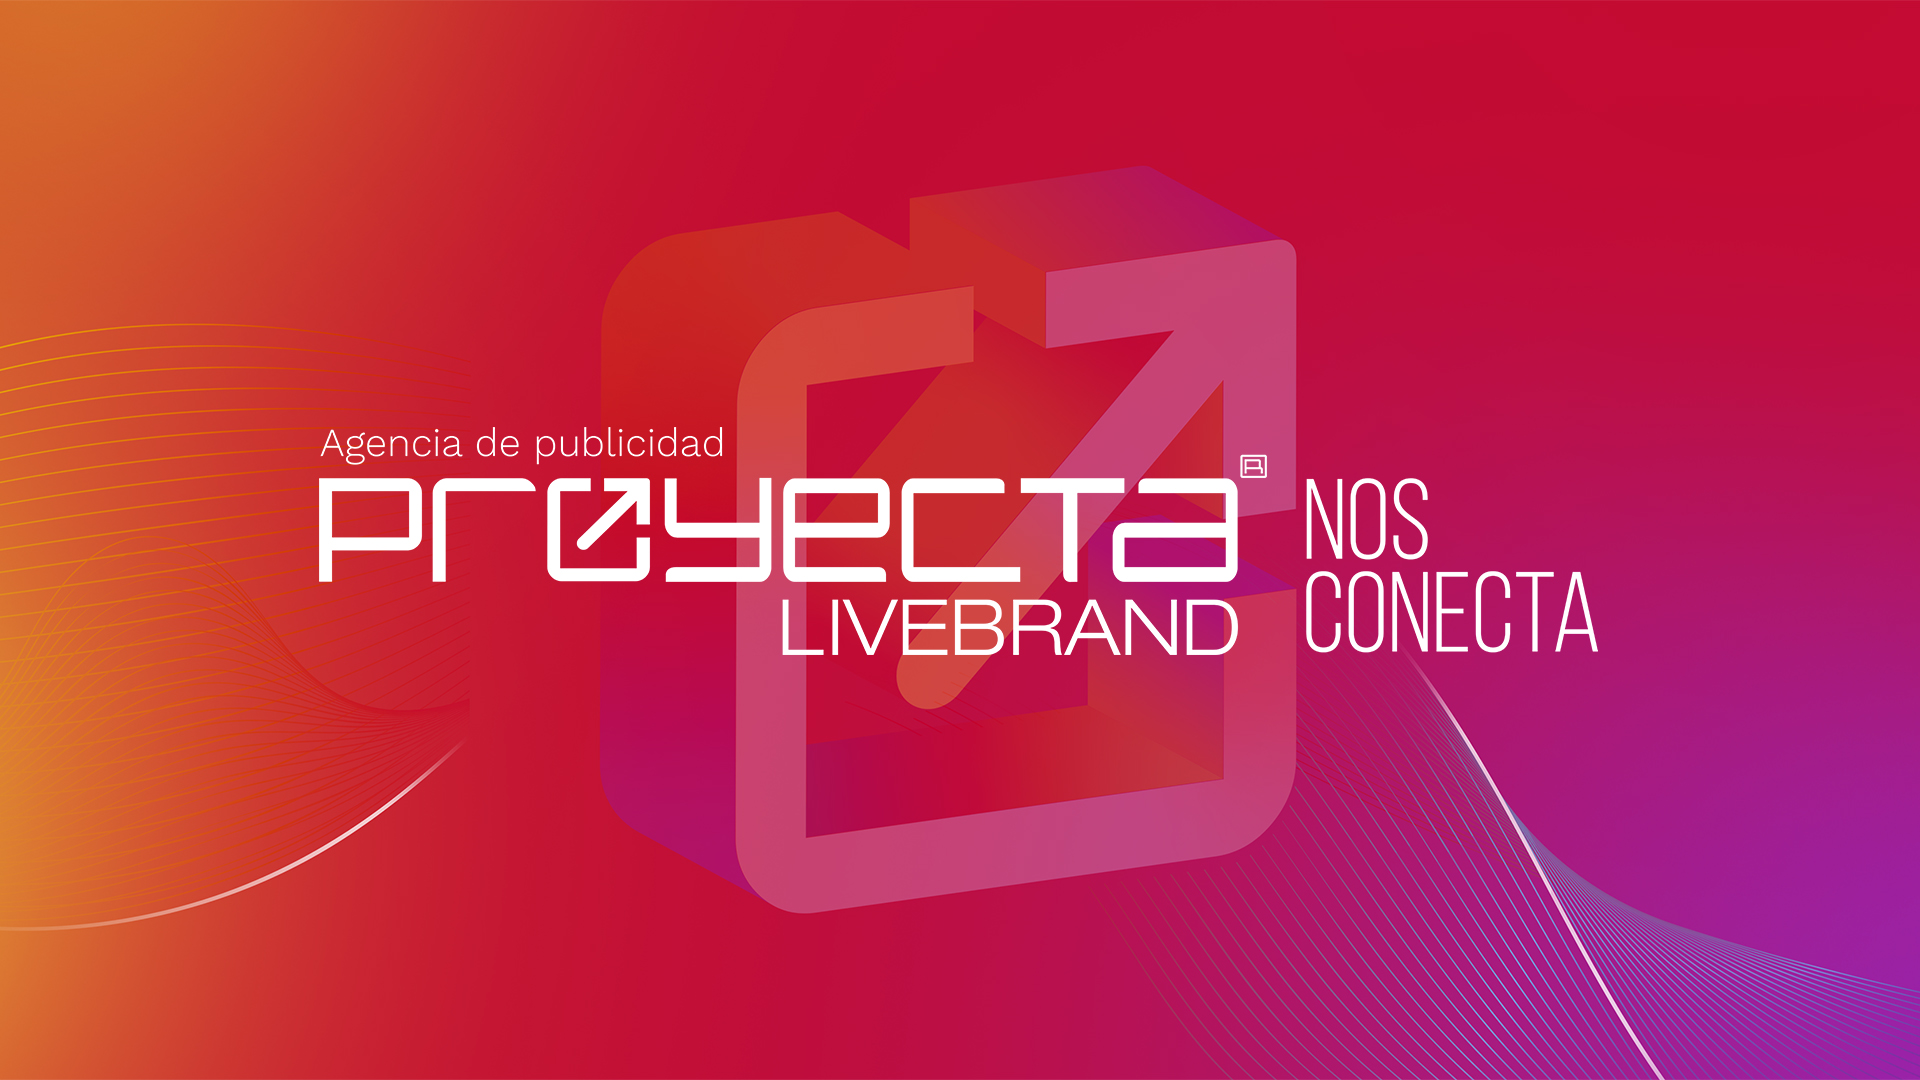 Proyecta Livebrand - Agencia de Publicidad